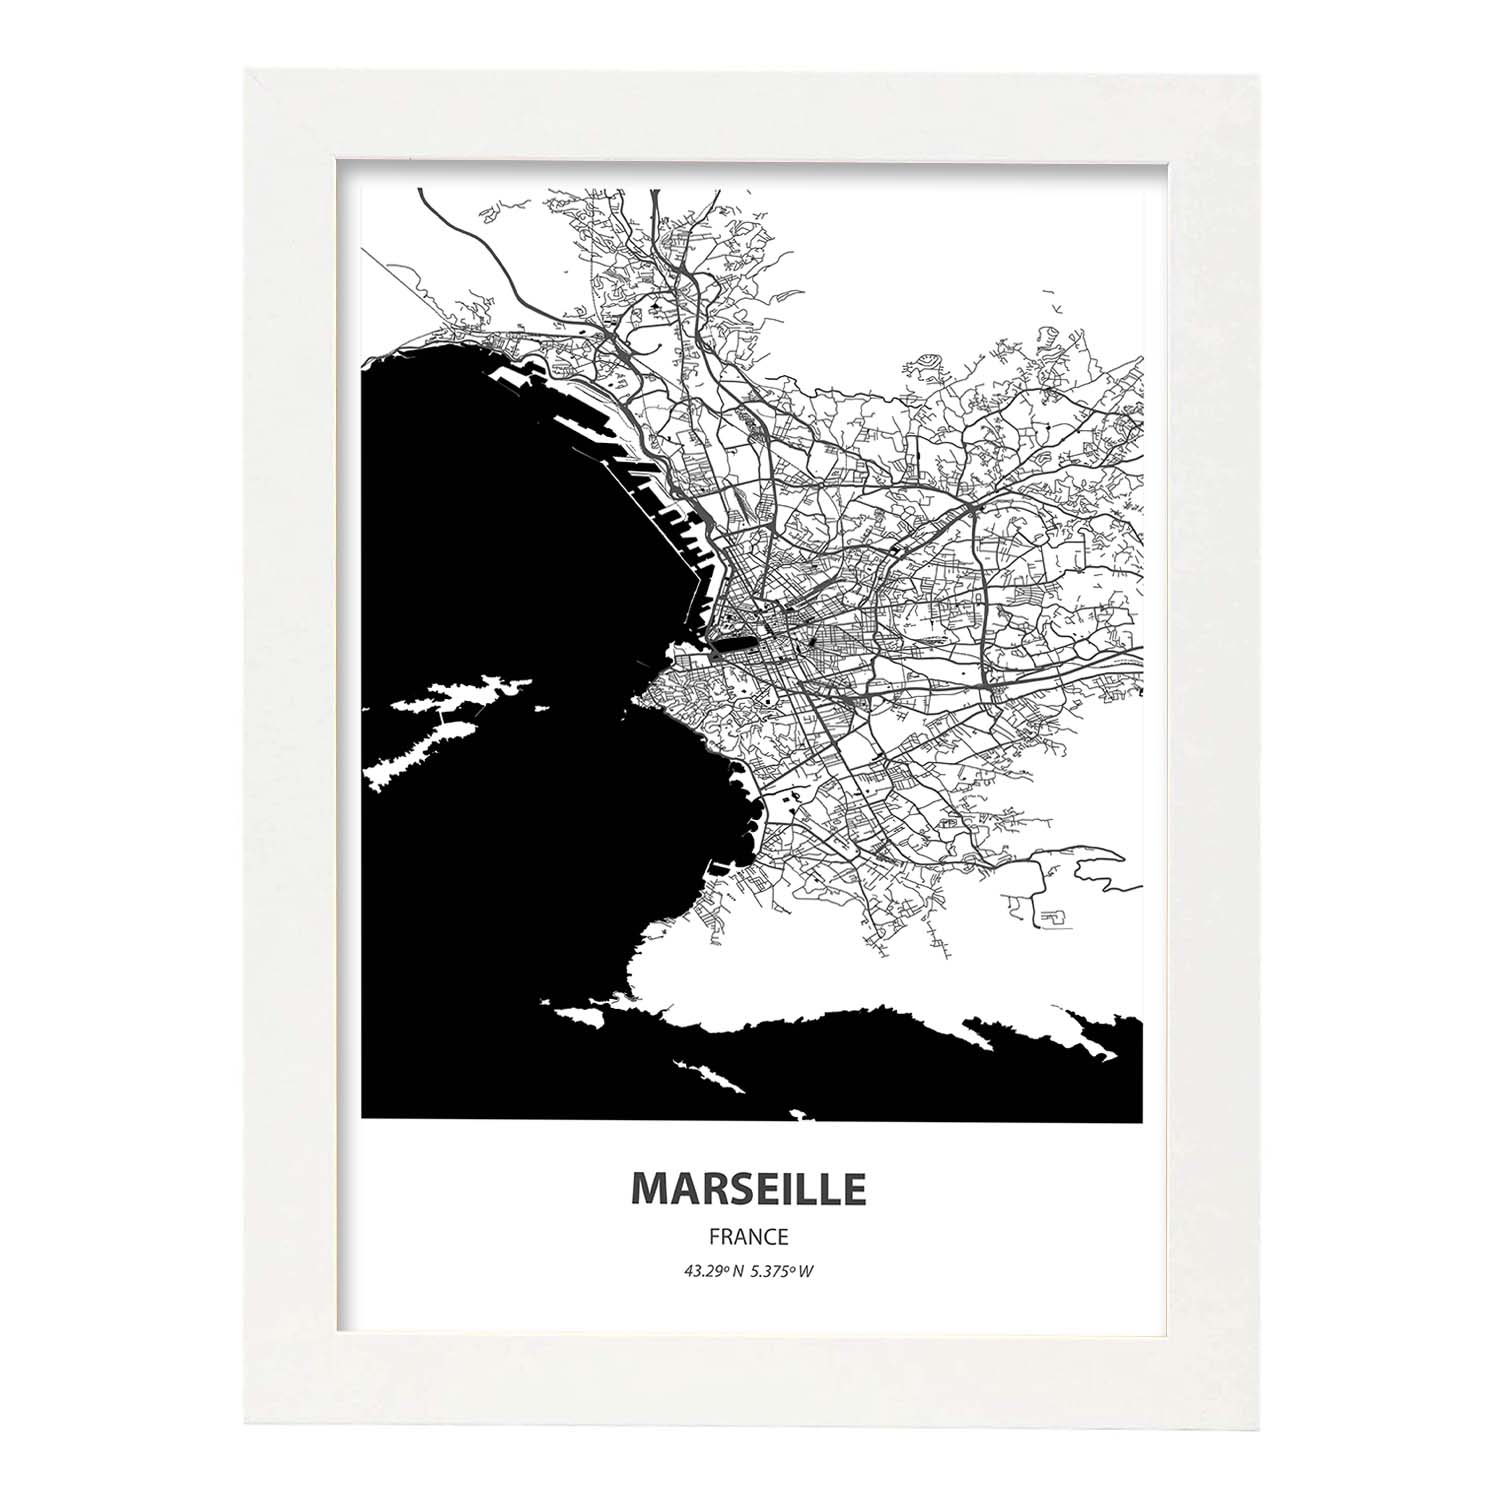 Poster con mapa de Marselle - Francia. Láminas de ciudades de Francia con mares y ríos en color negro.-Artwork-Nacnic-A4-Marco Blanco-Nacnic Estudio SL